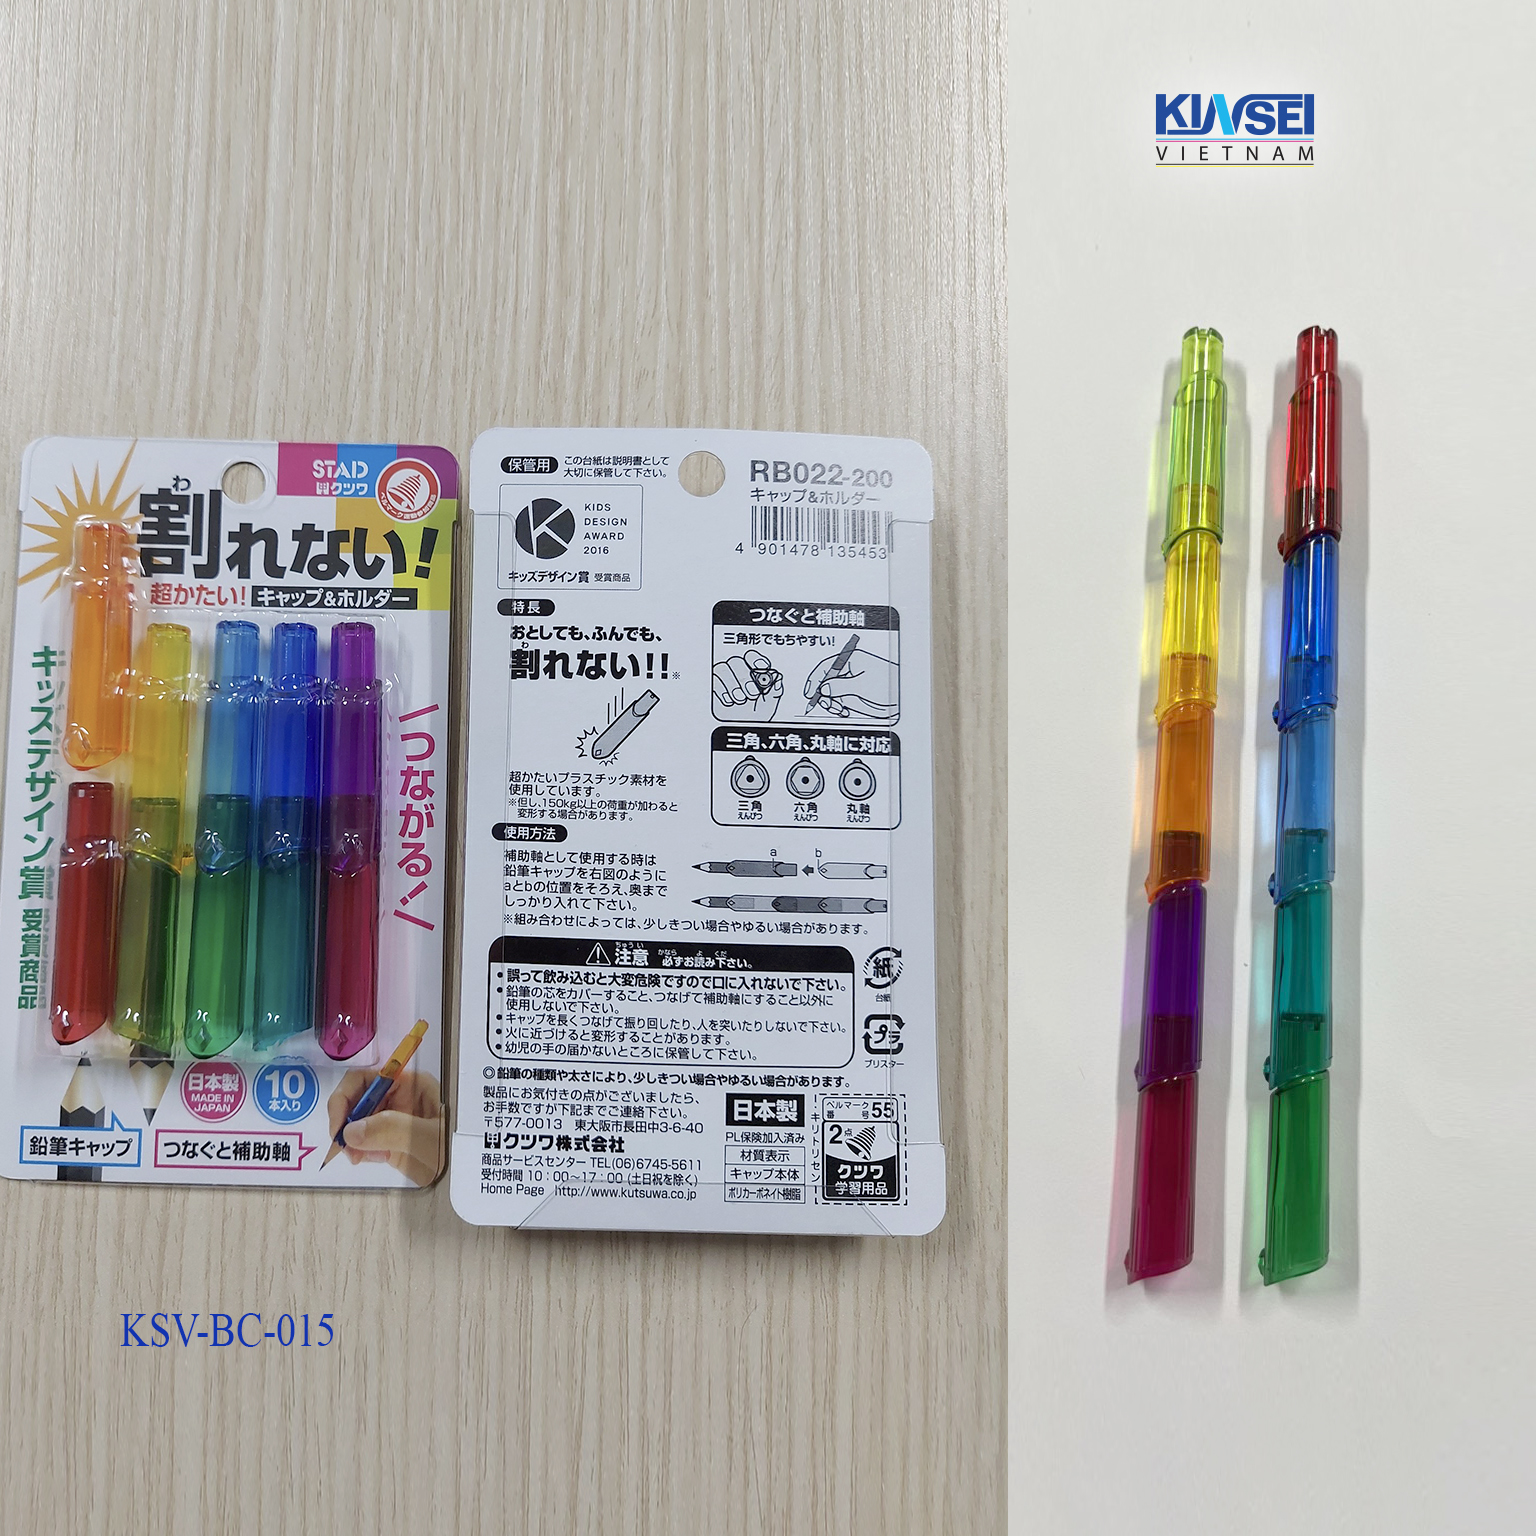 Set 10 cái Nắp bảo vệ bút chì chống gãy và kéo dài dễ cầm, nhiều màu sắc